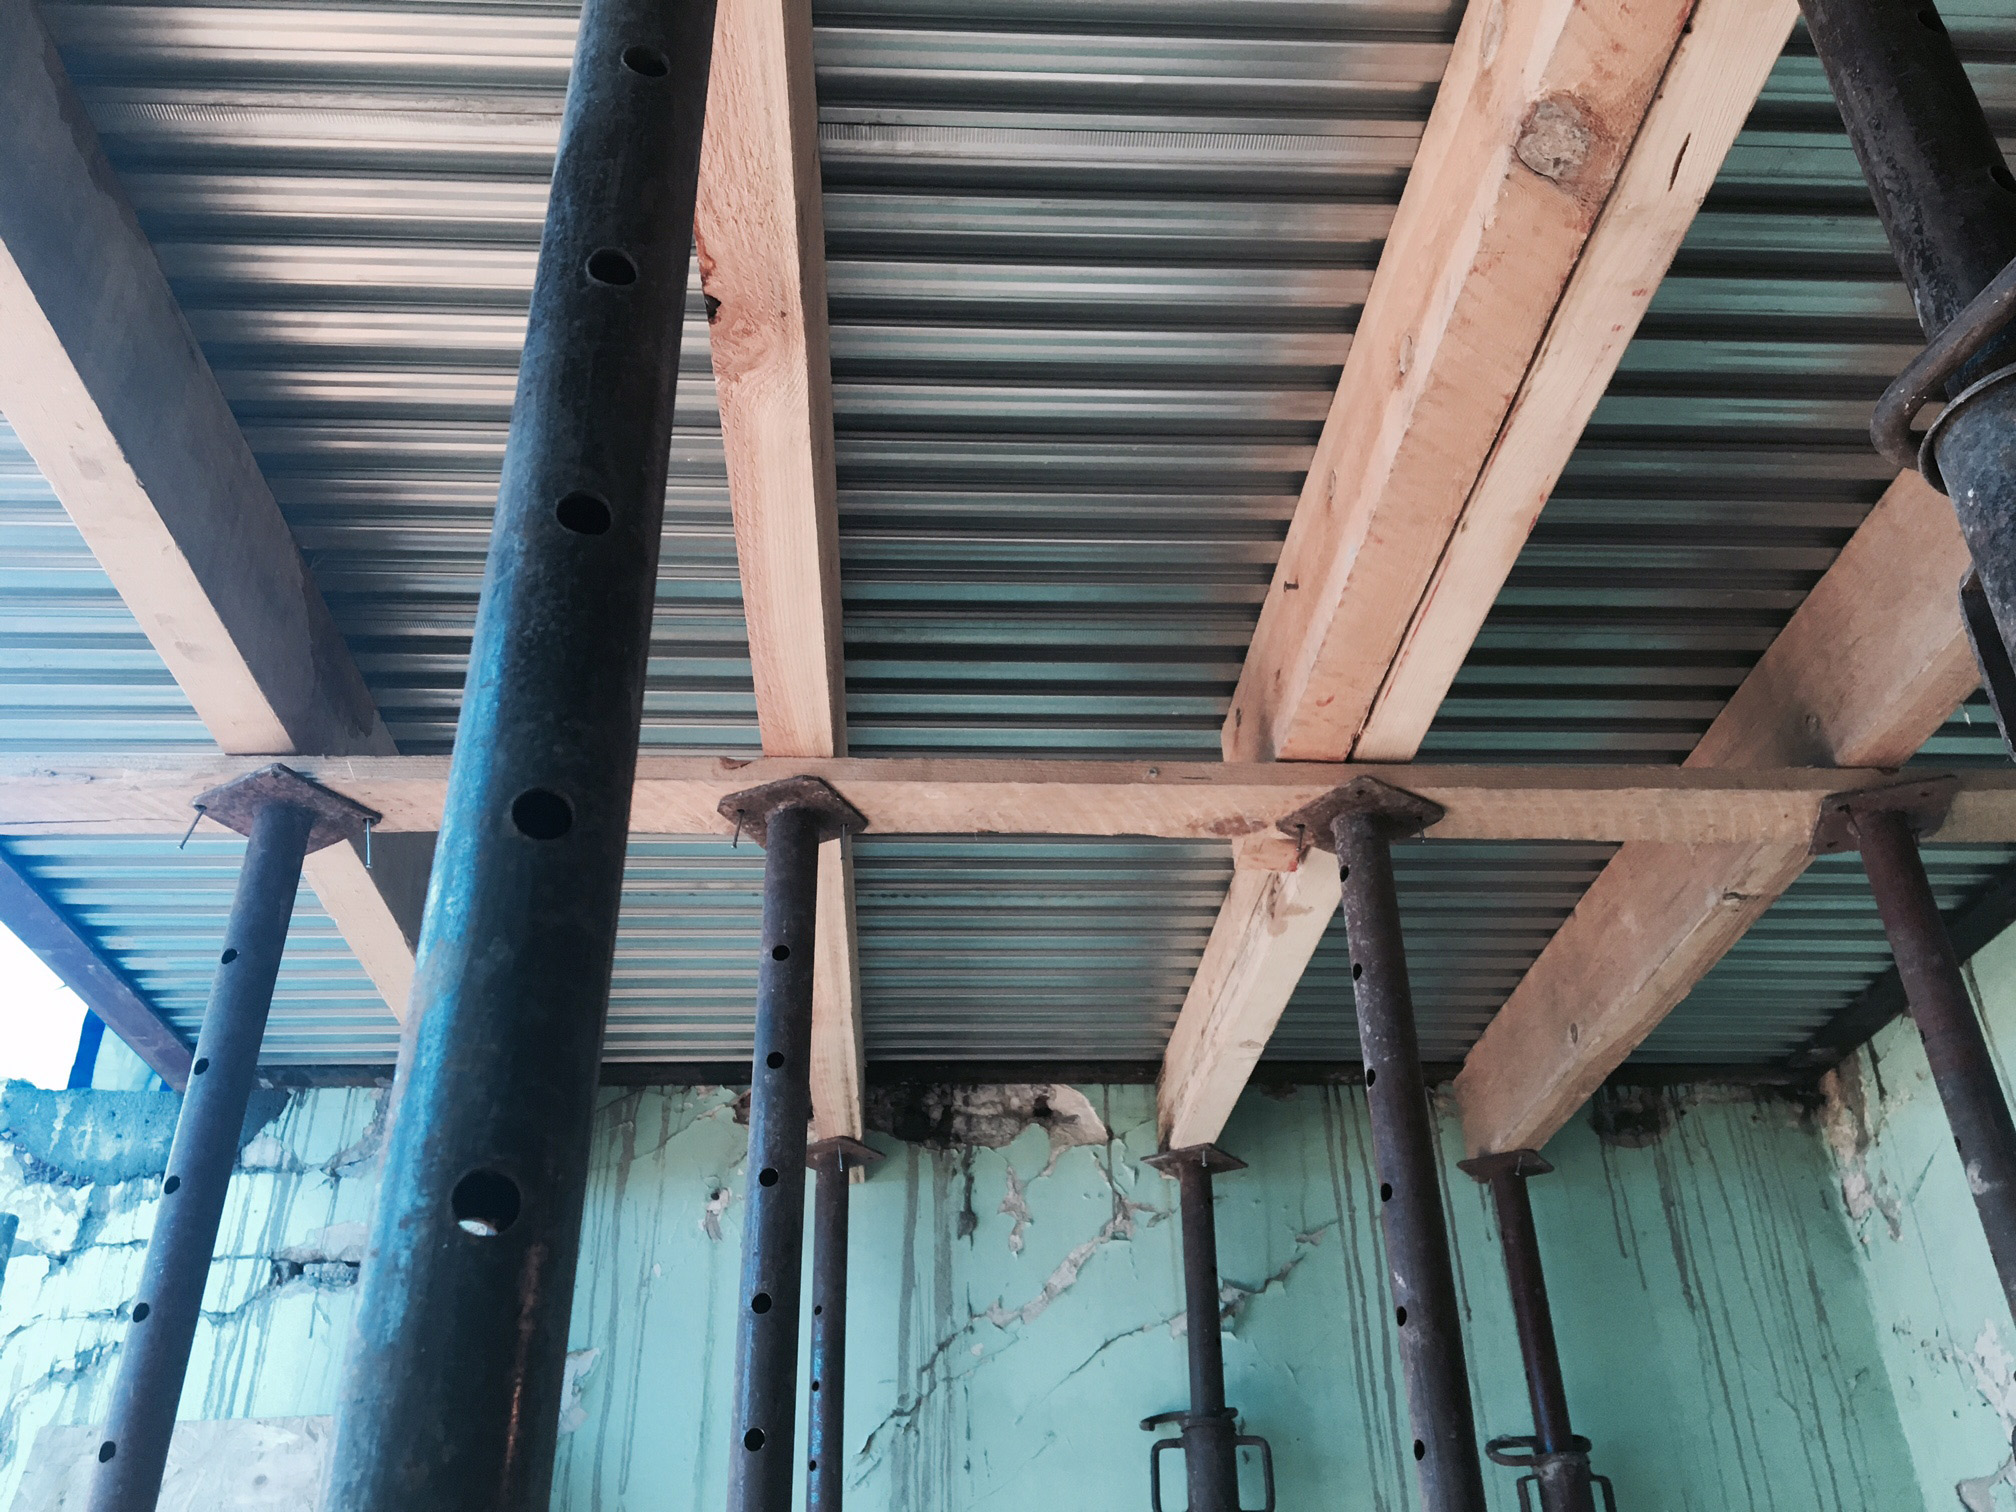 photo de chantier en cours : vue sur le plafond de l'atelier en plancher Lewis apparent, avec étançons de maintien